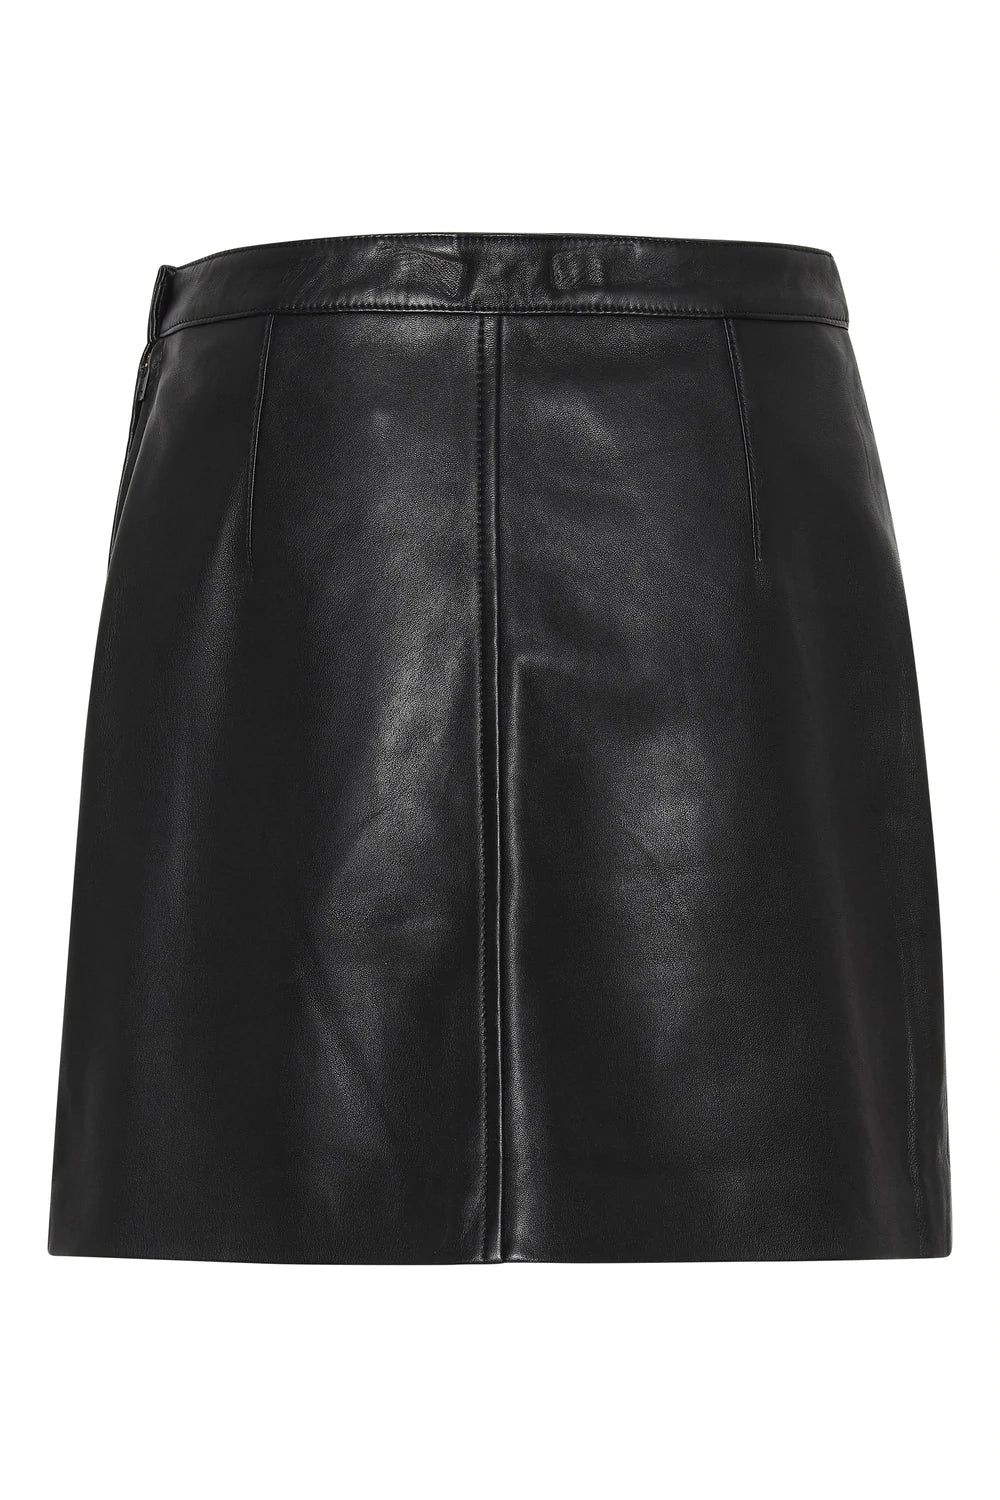 Sky Leather Skirt